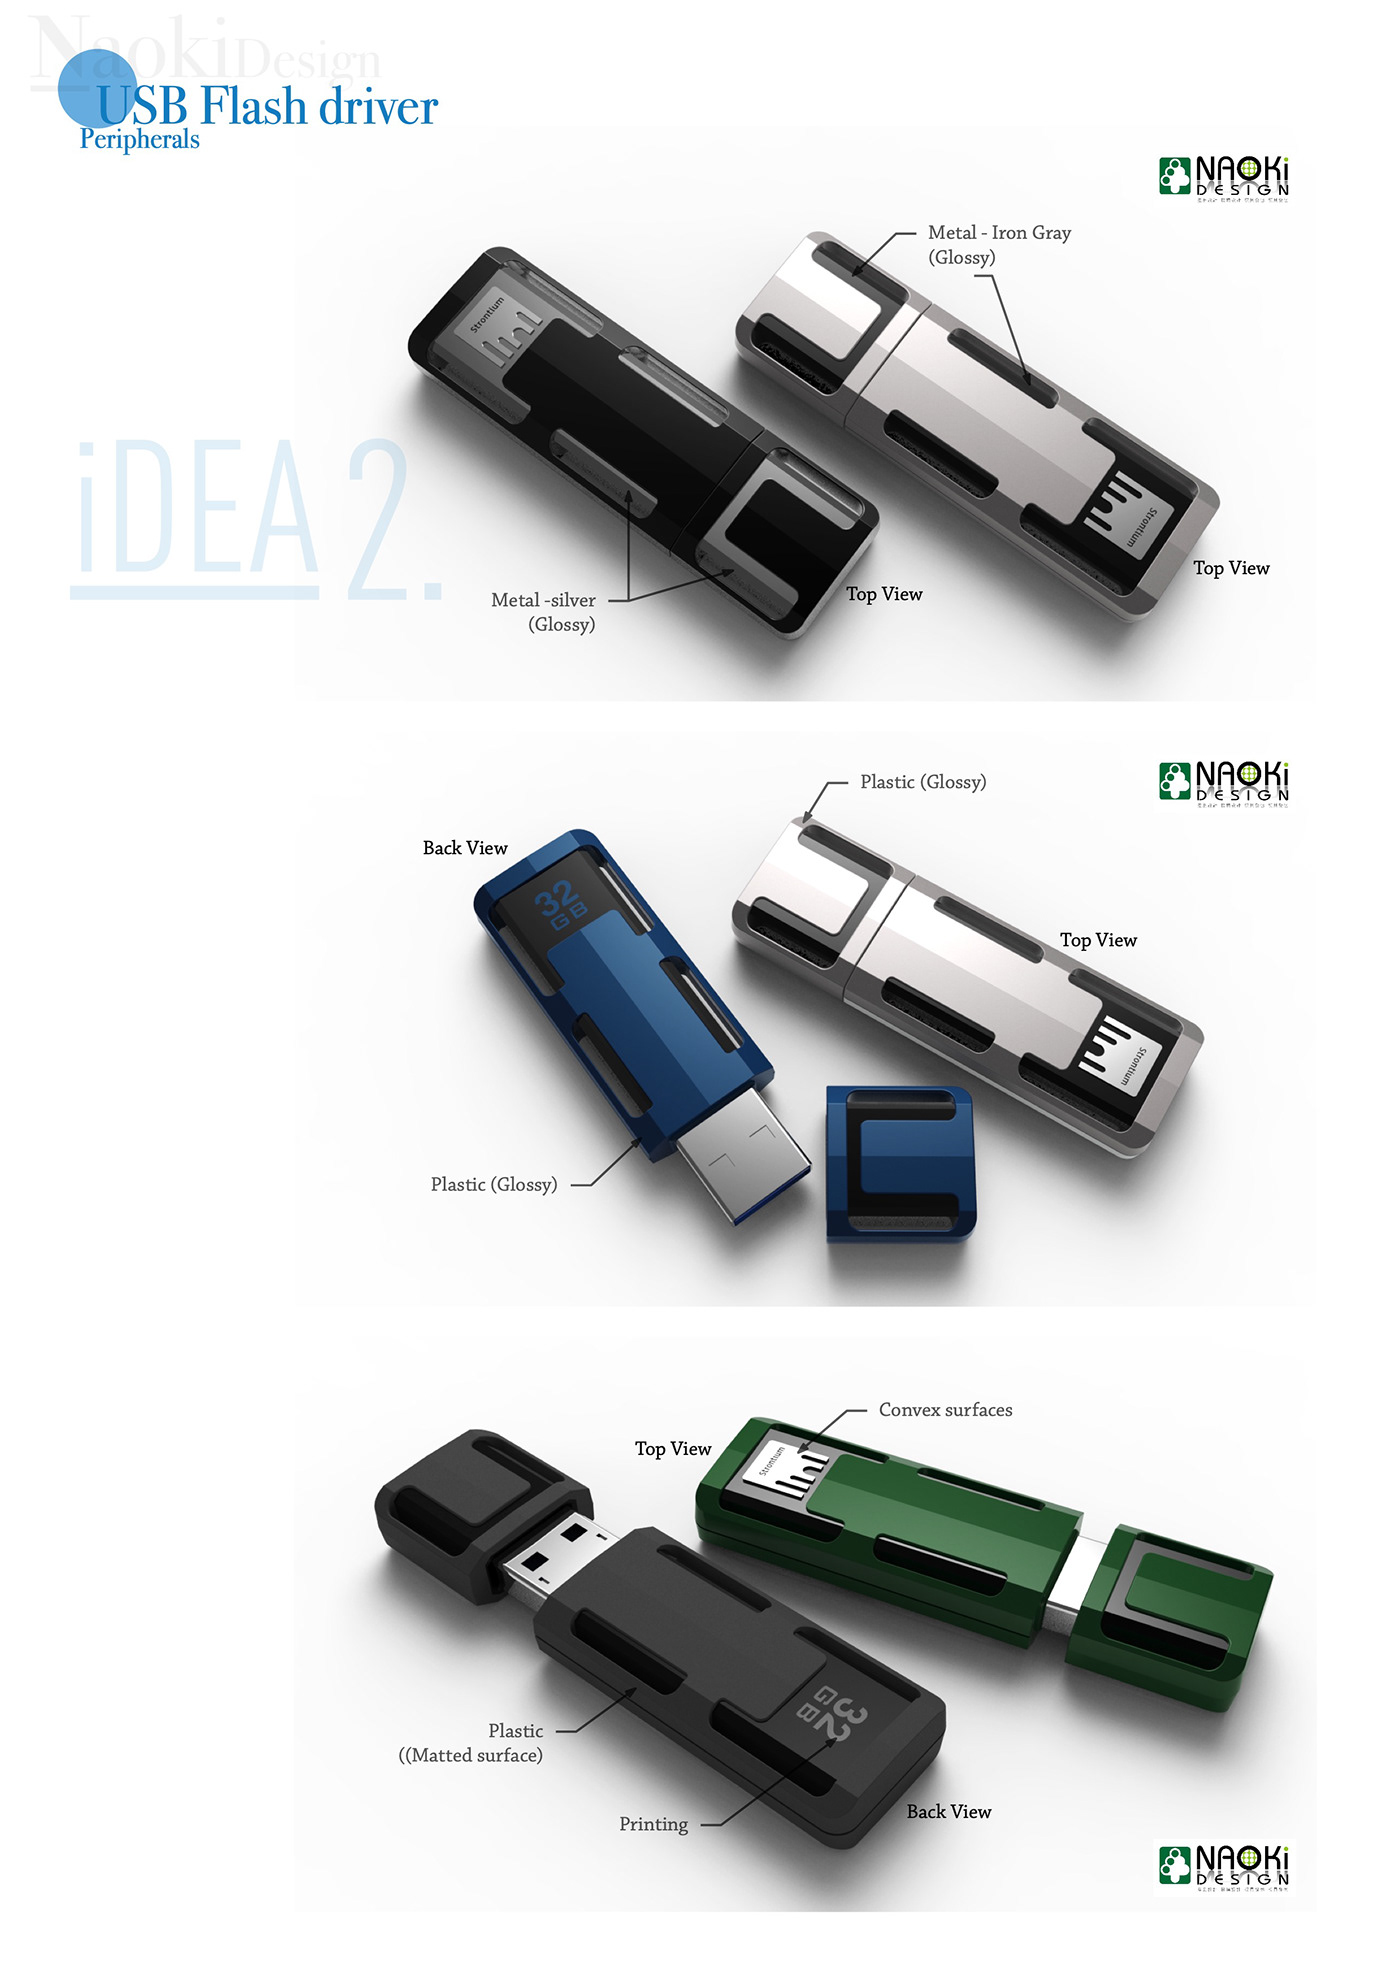 Flash Drive Design usb design usb flash drive